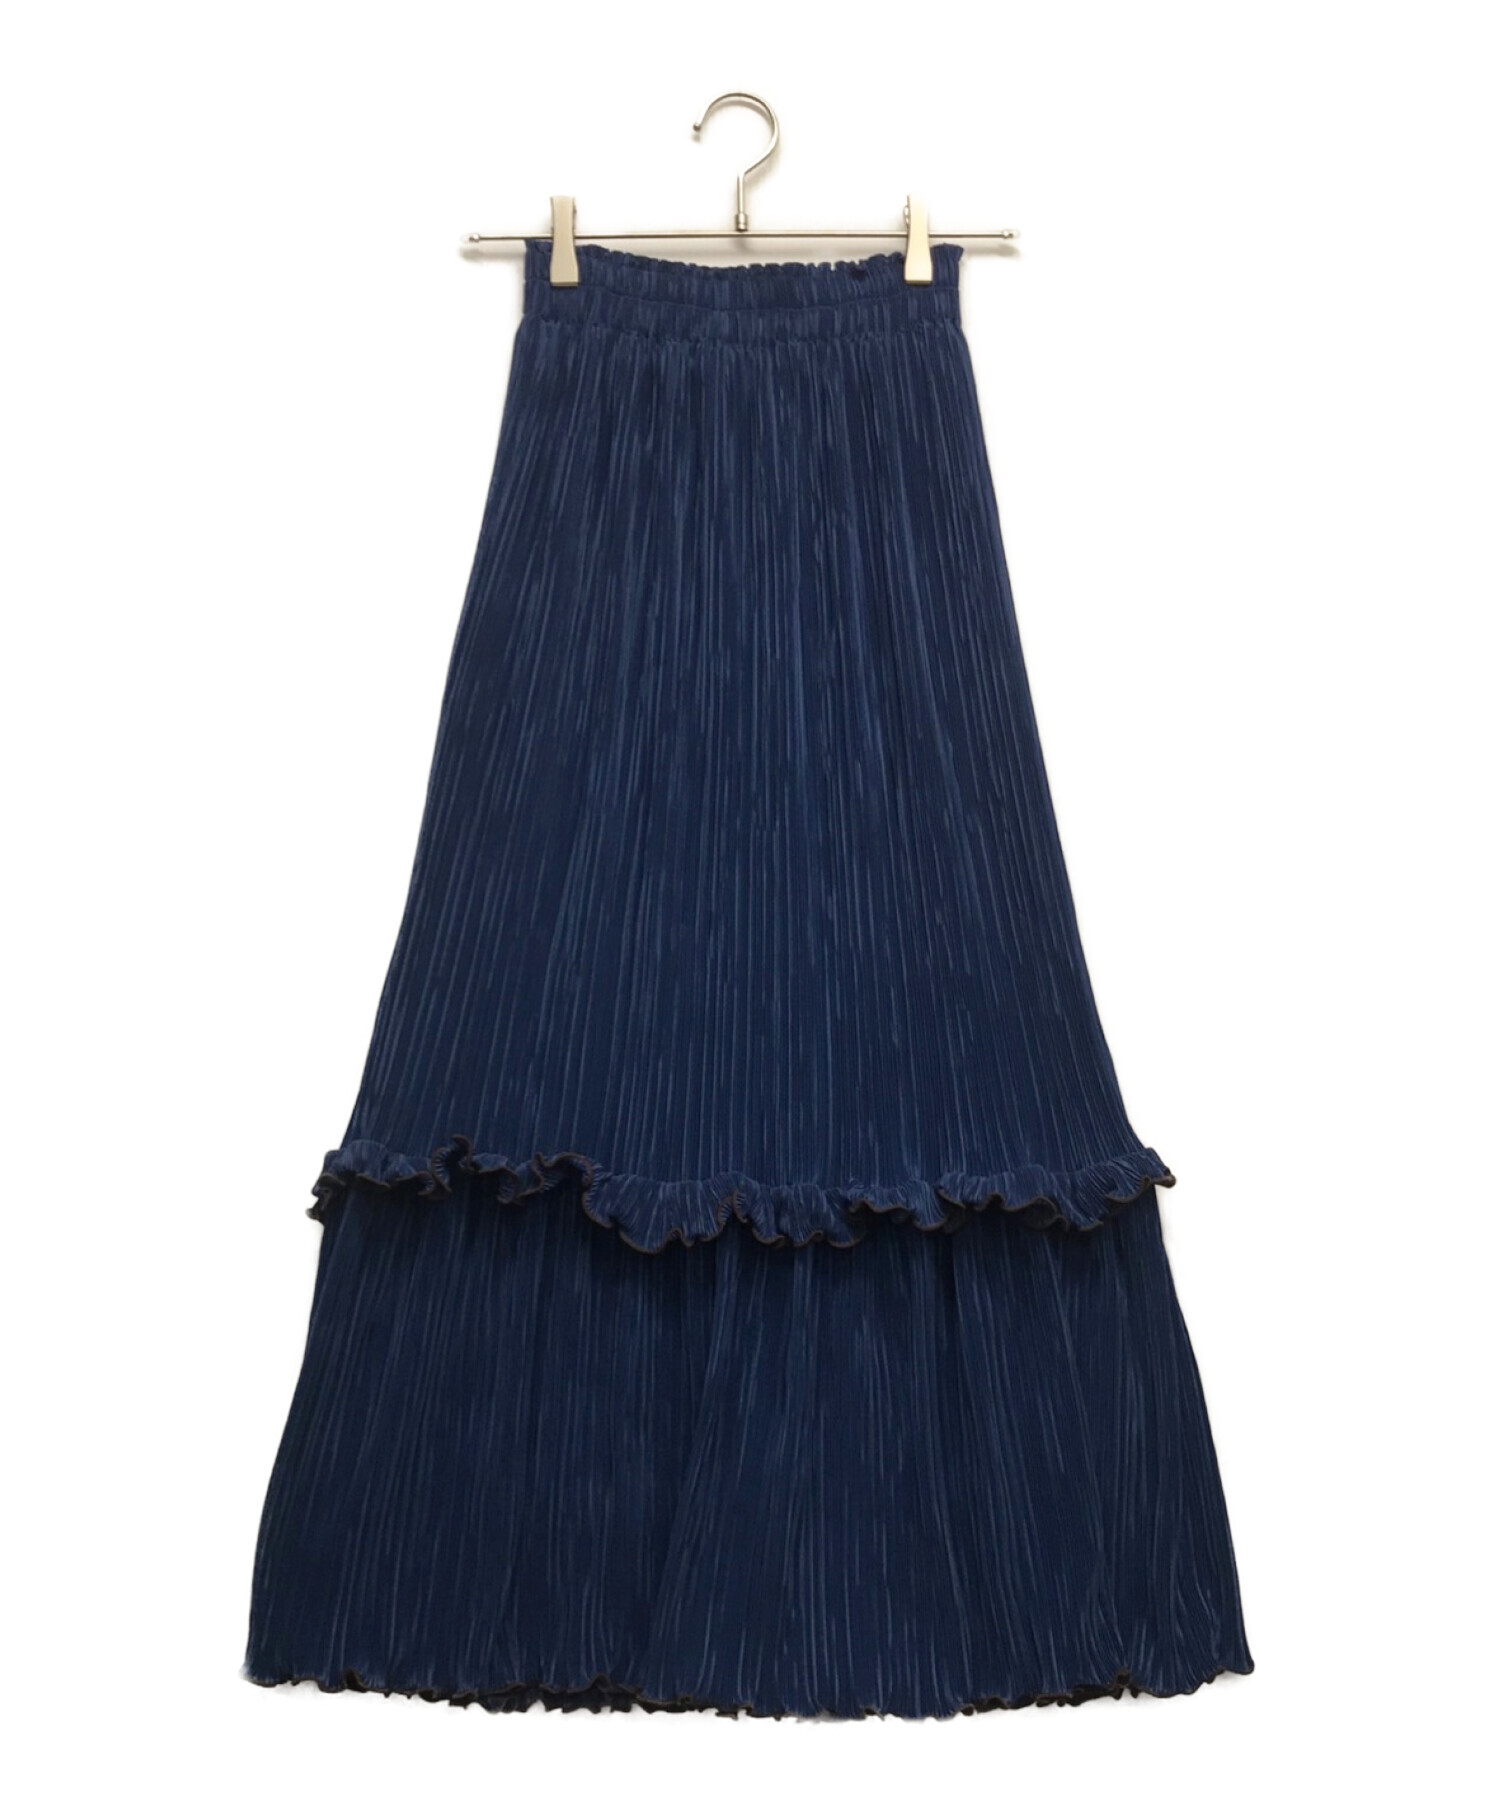 poppy tokyo (ポピートウキョウ) カーネーションプリーツスカート ブルー サイズ:M